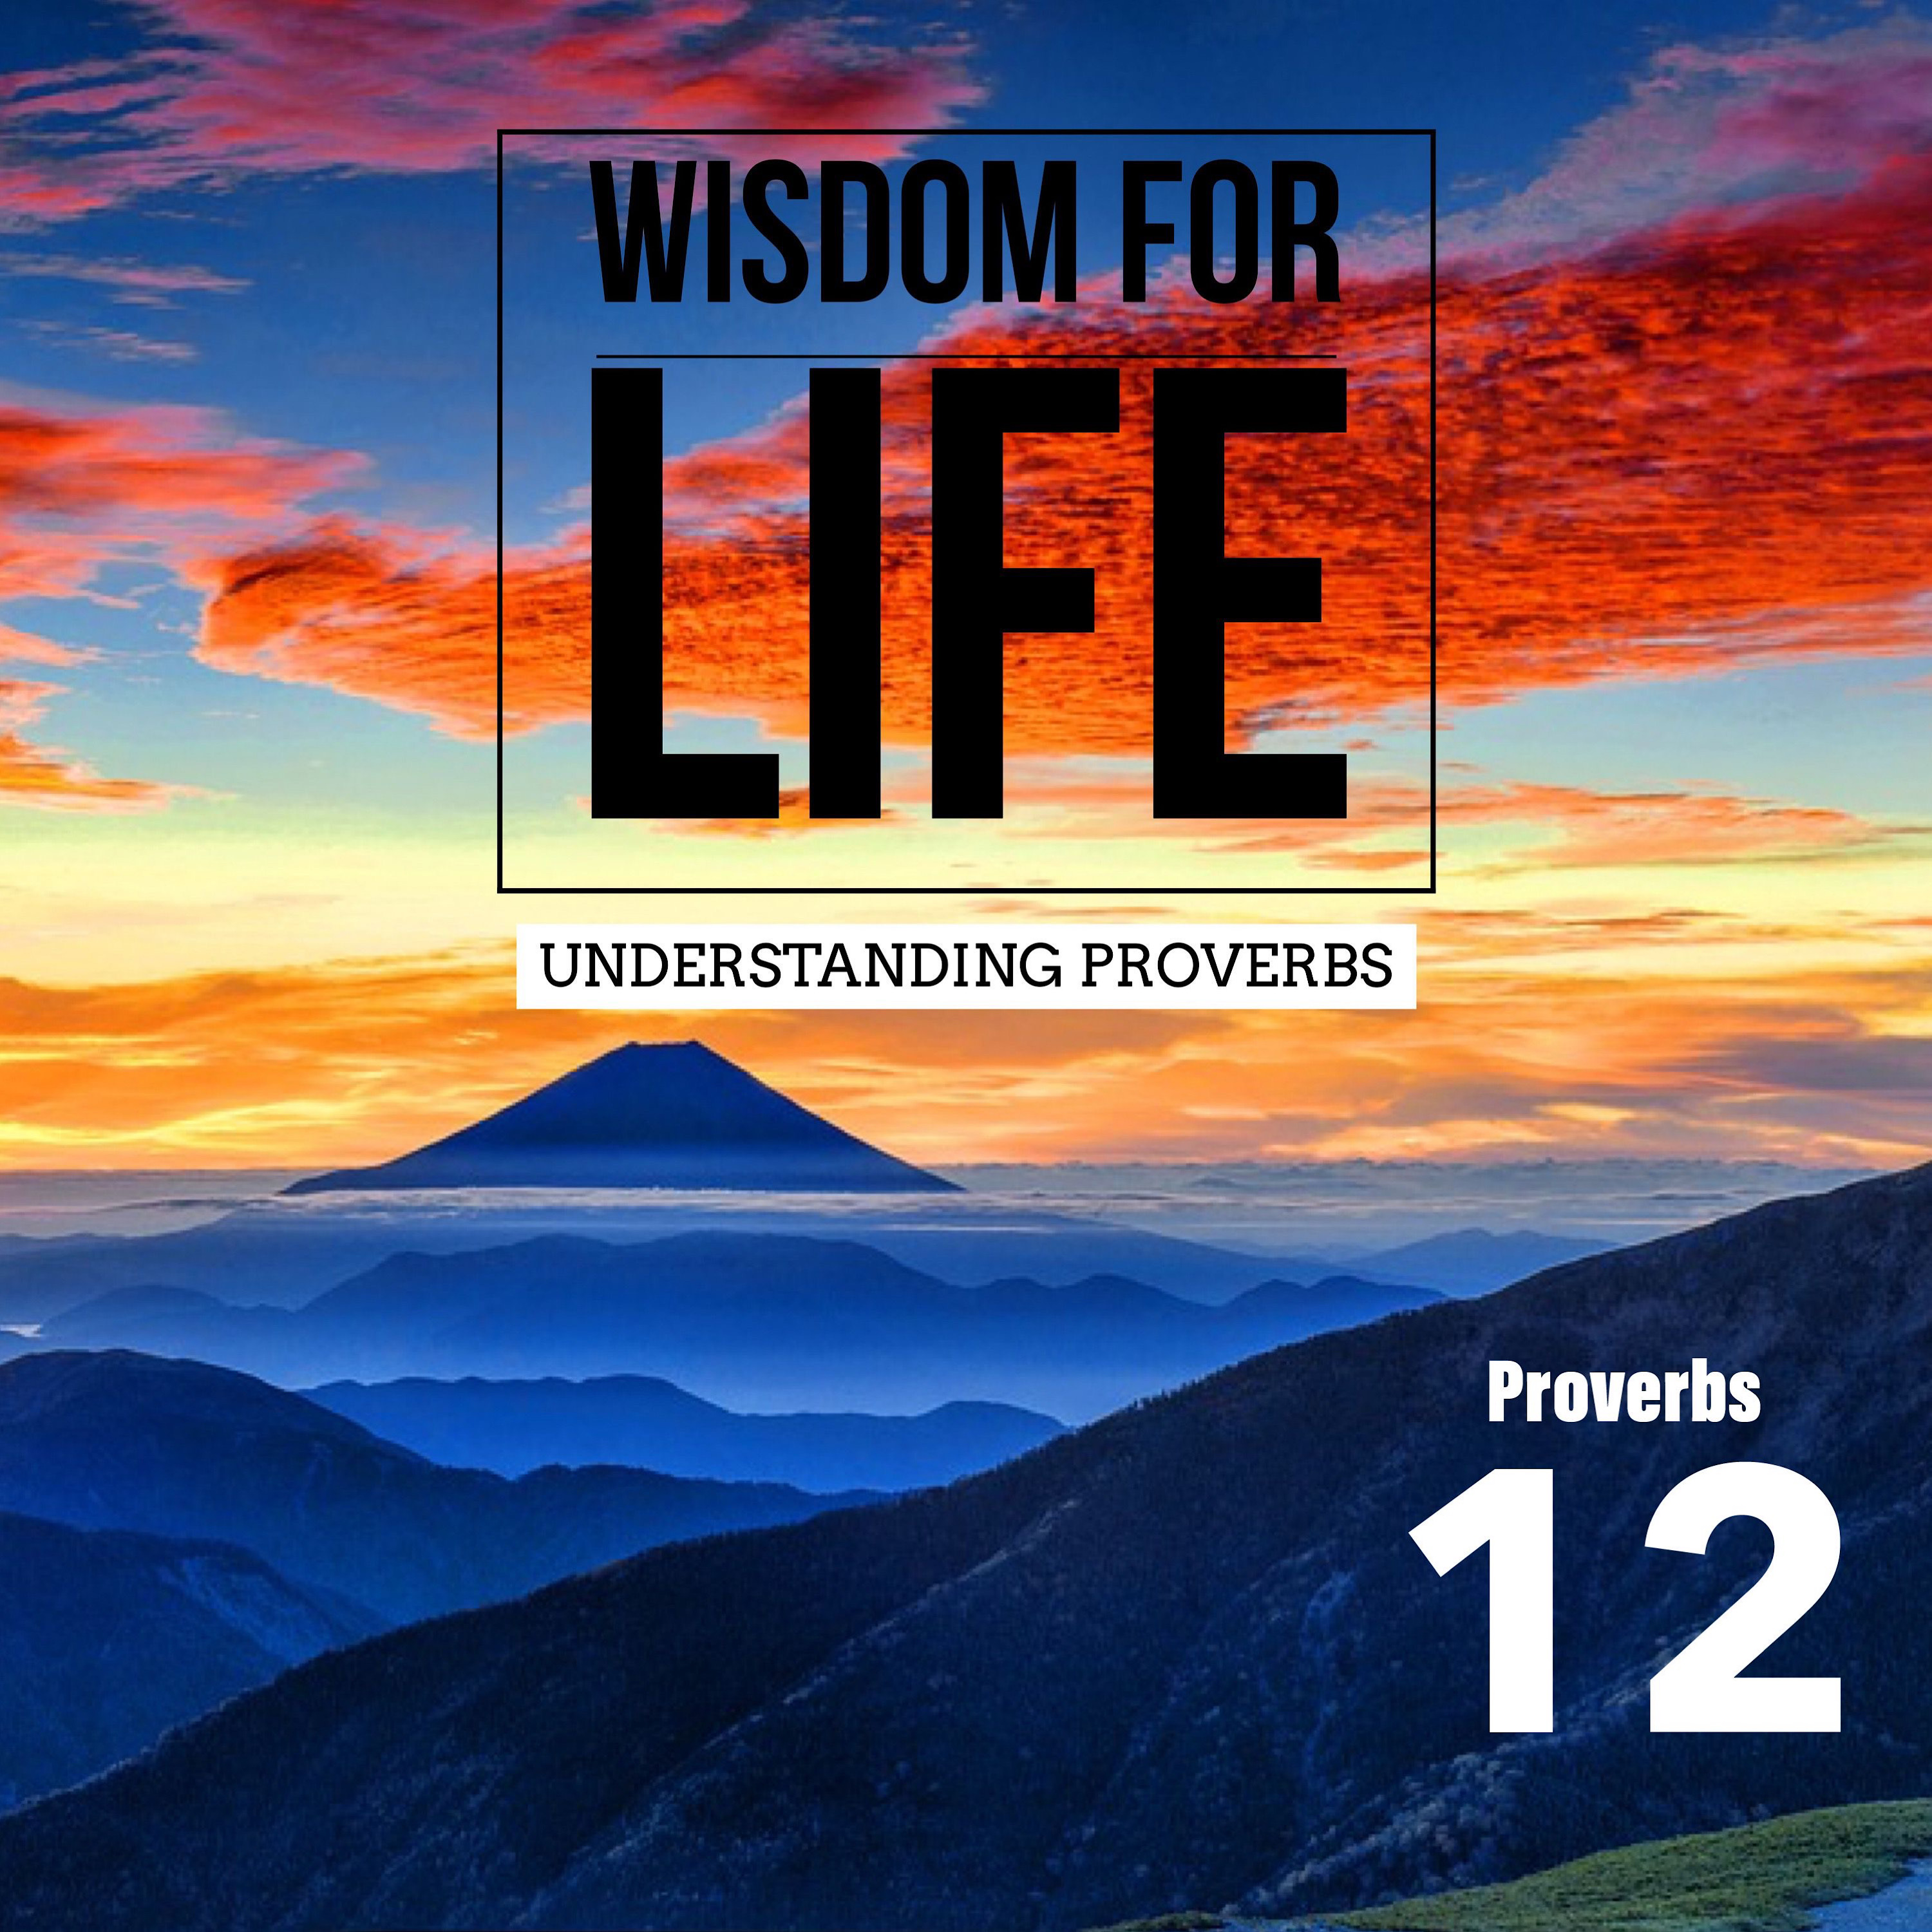 UNDERSTANDING PROVERBS 12